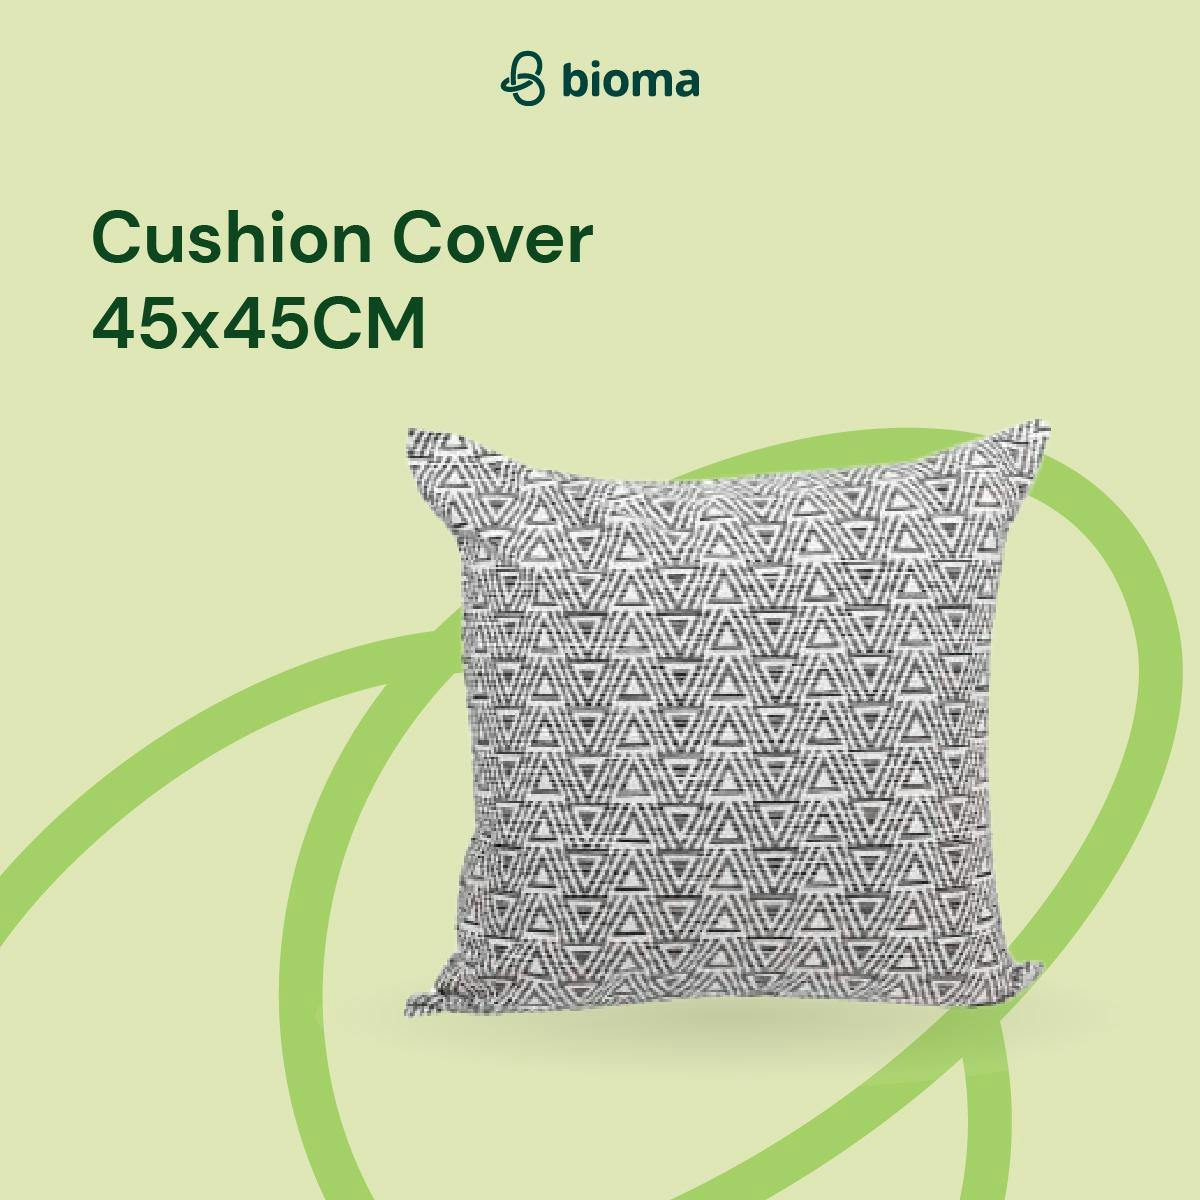 Cushion Cover 45X45CM